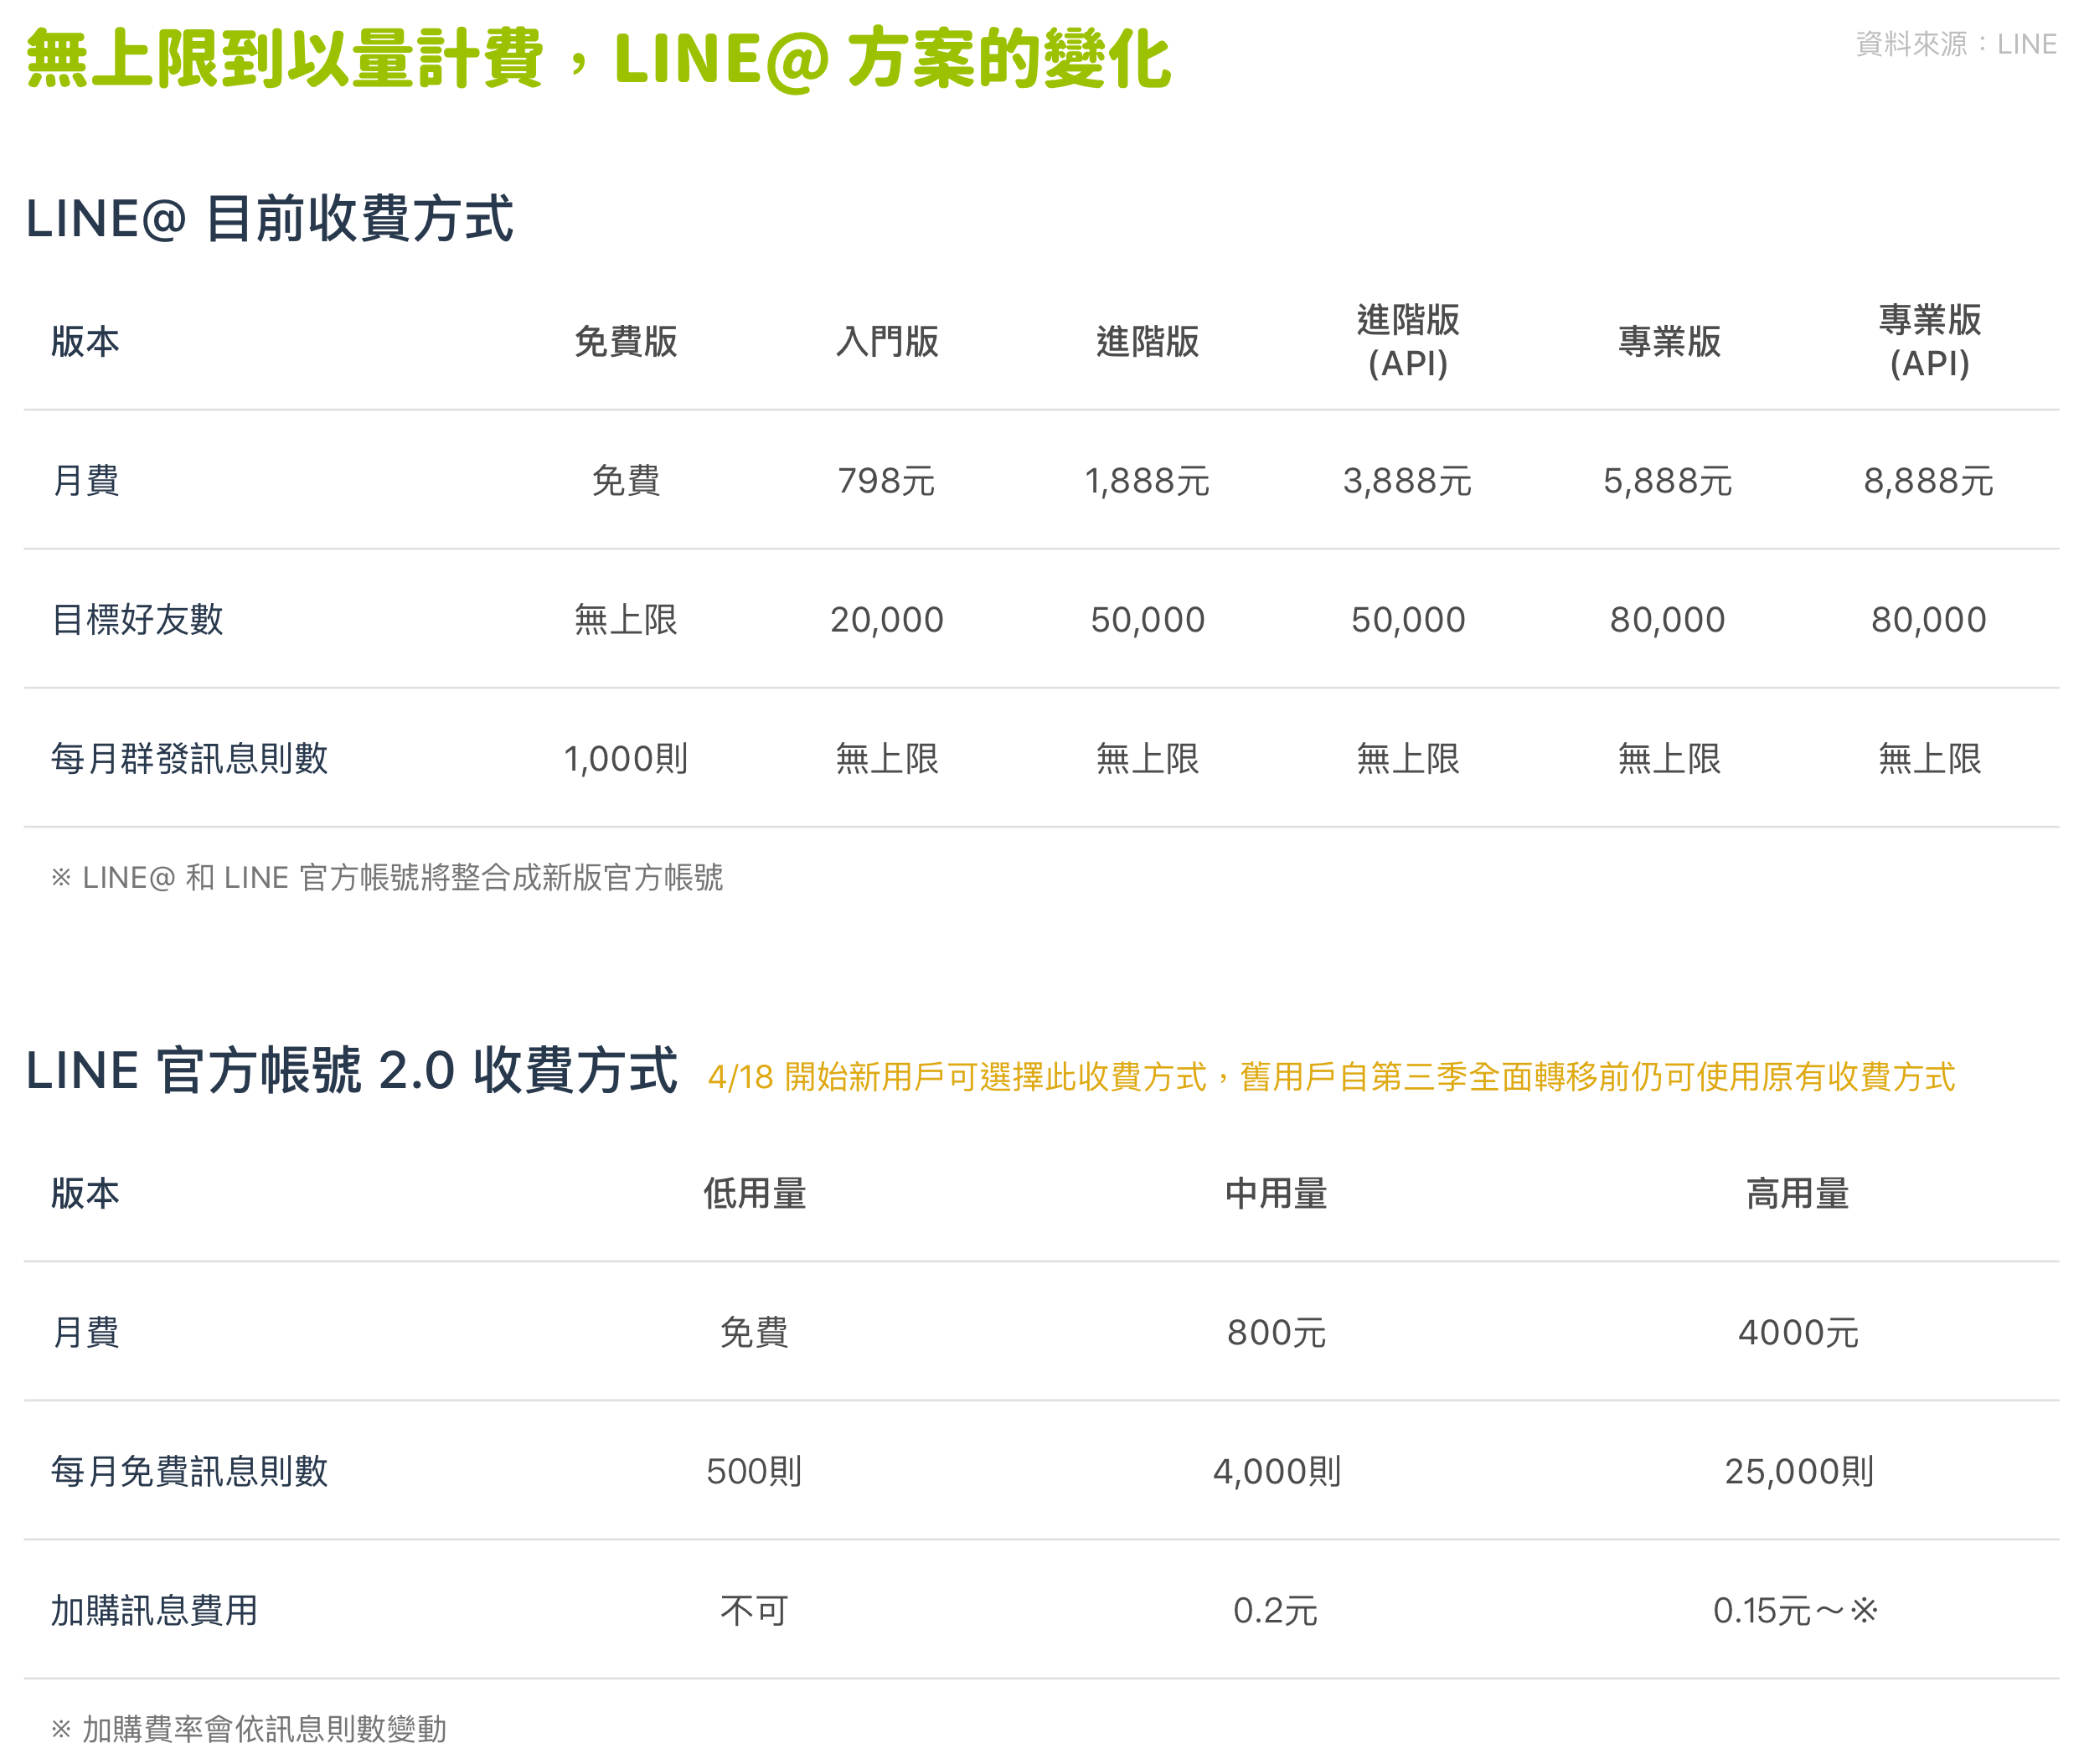 迎接line 官方帳號2 0 全面升級 到底有哪些事情改變了 By Ting Huang Super 8 Medium